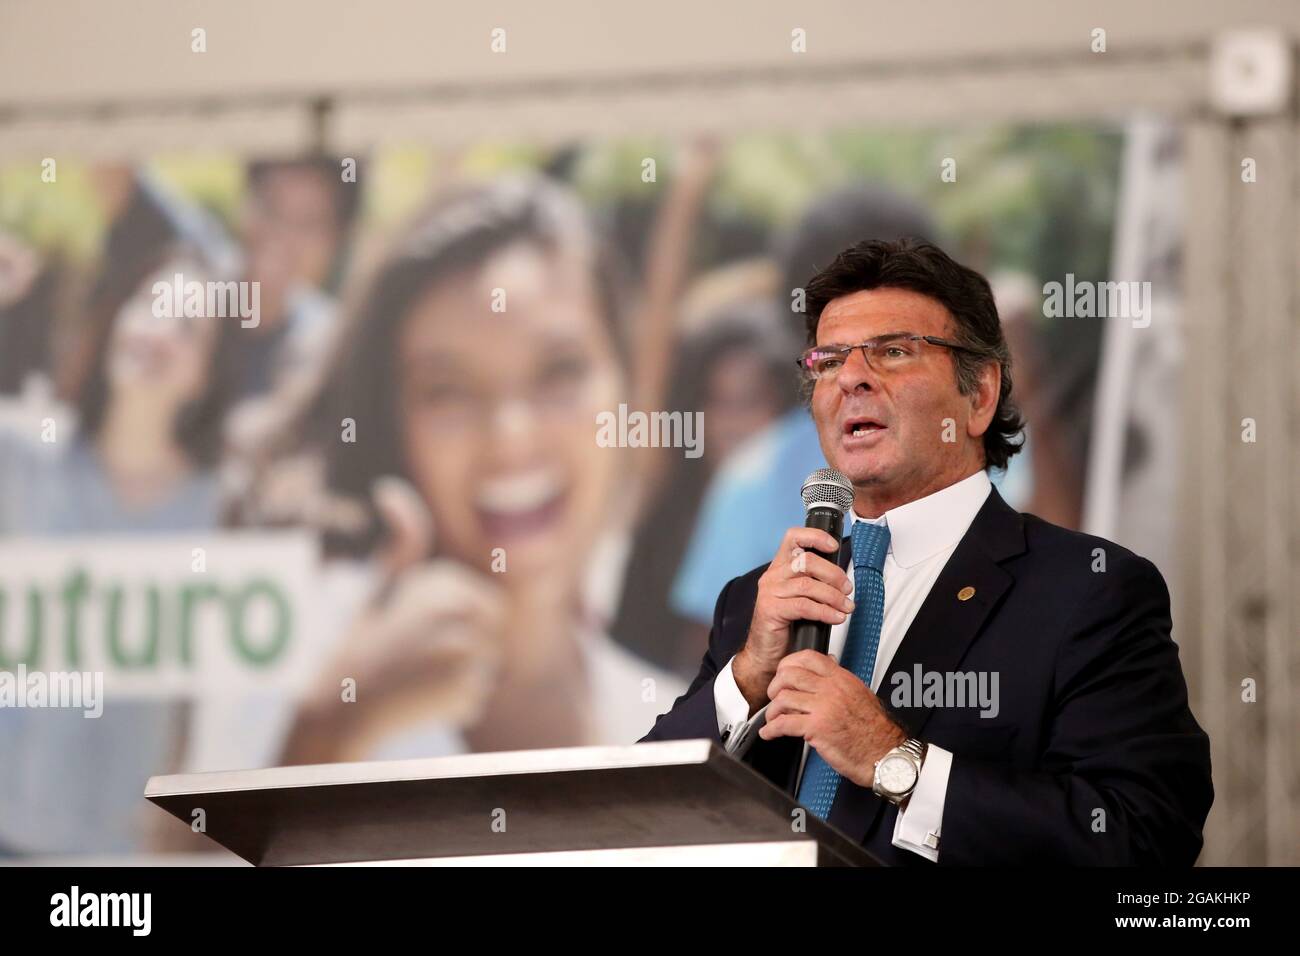 salvador, bahia, brasilien - 31. juli 2018: Der Minister und Präsident des brasilianischen Obersten Gerichtshofs Luiz Fux wird während einer Präsentation in der Stadt S zu sehen sein Stockfoto